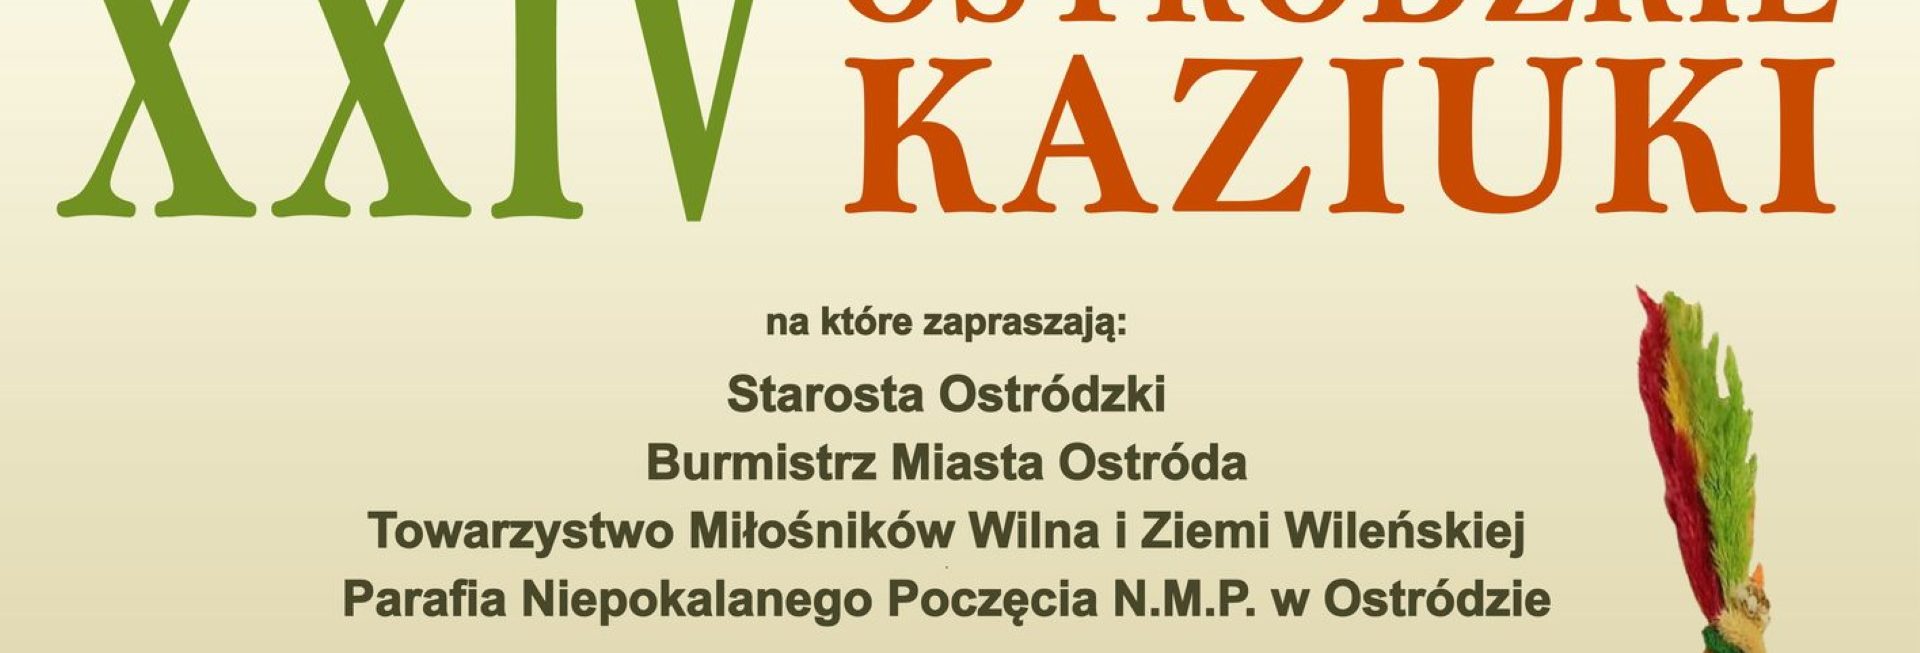 Plakat zapraszający w niedzielę 26 lutego 2023 r. do Ostródy na występ Ostródzkie KAZIUKI Ostróda 2023.